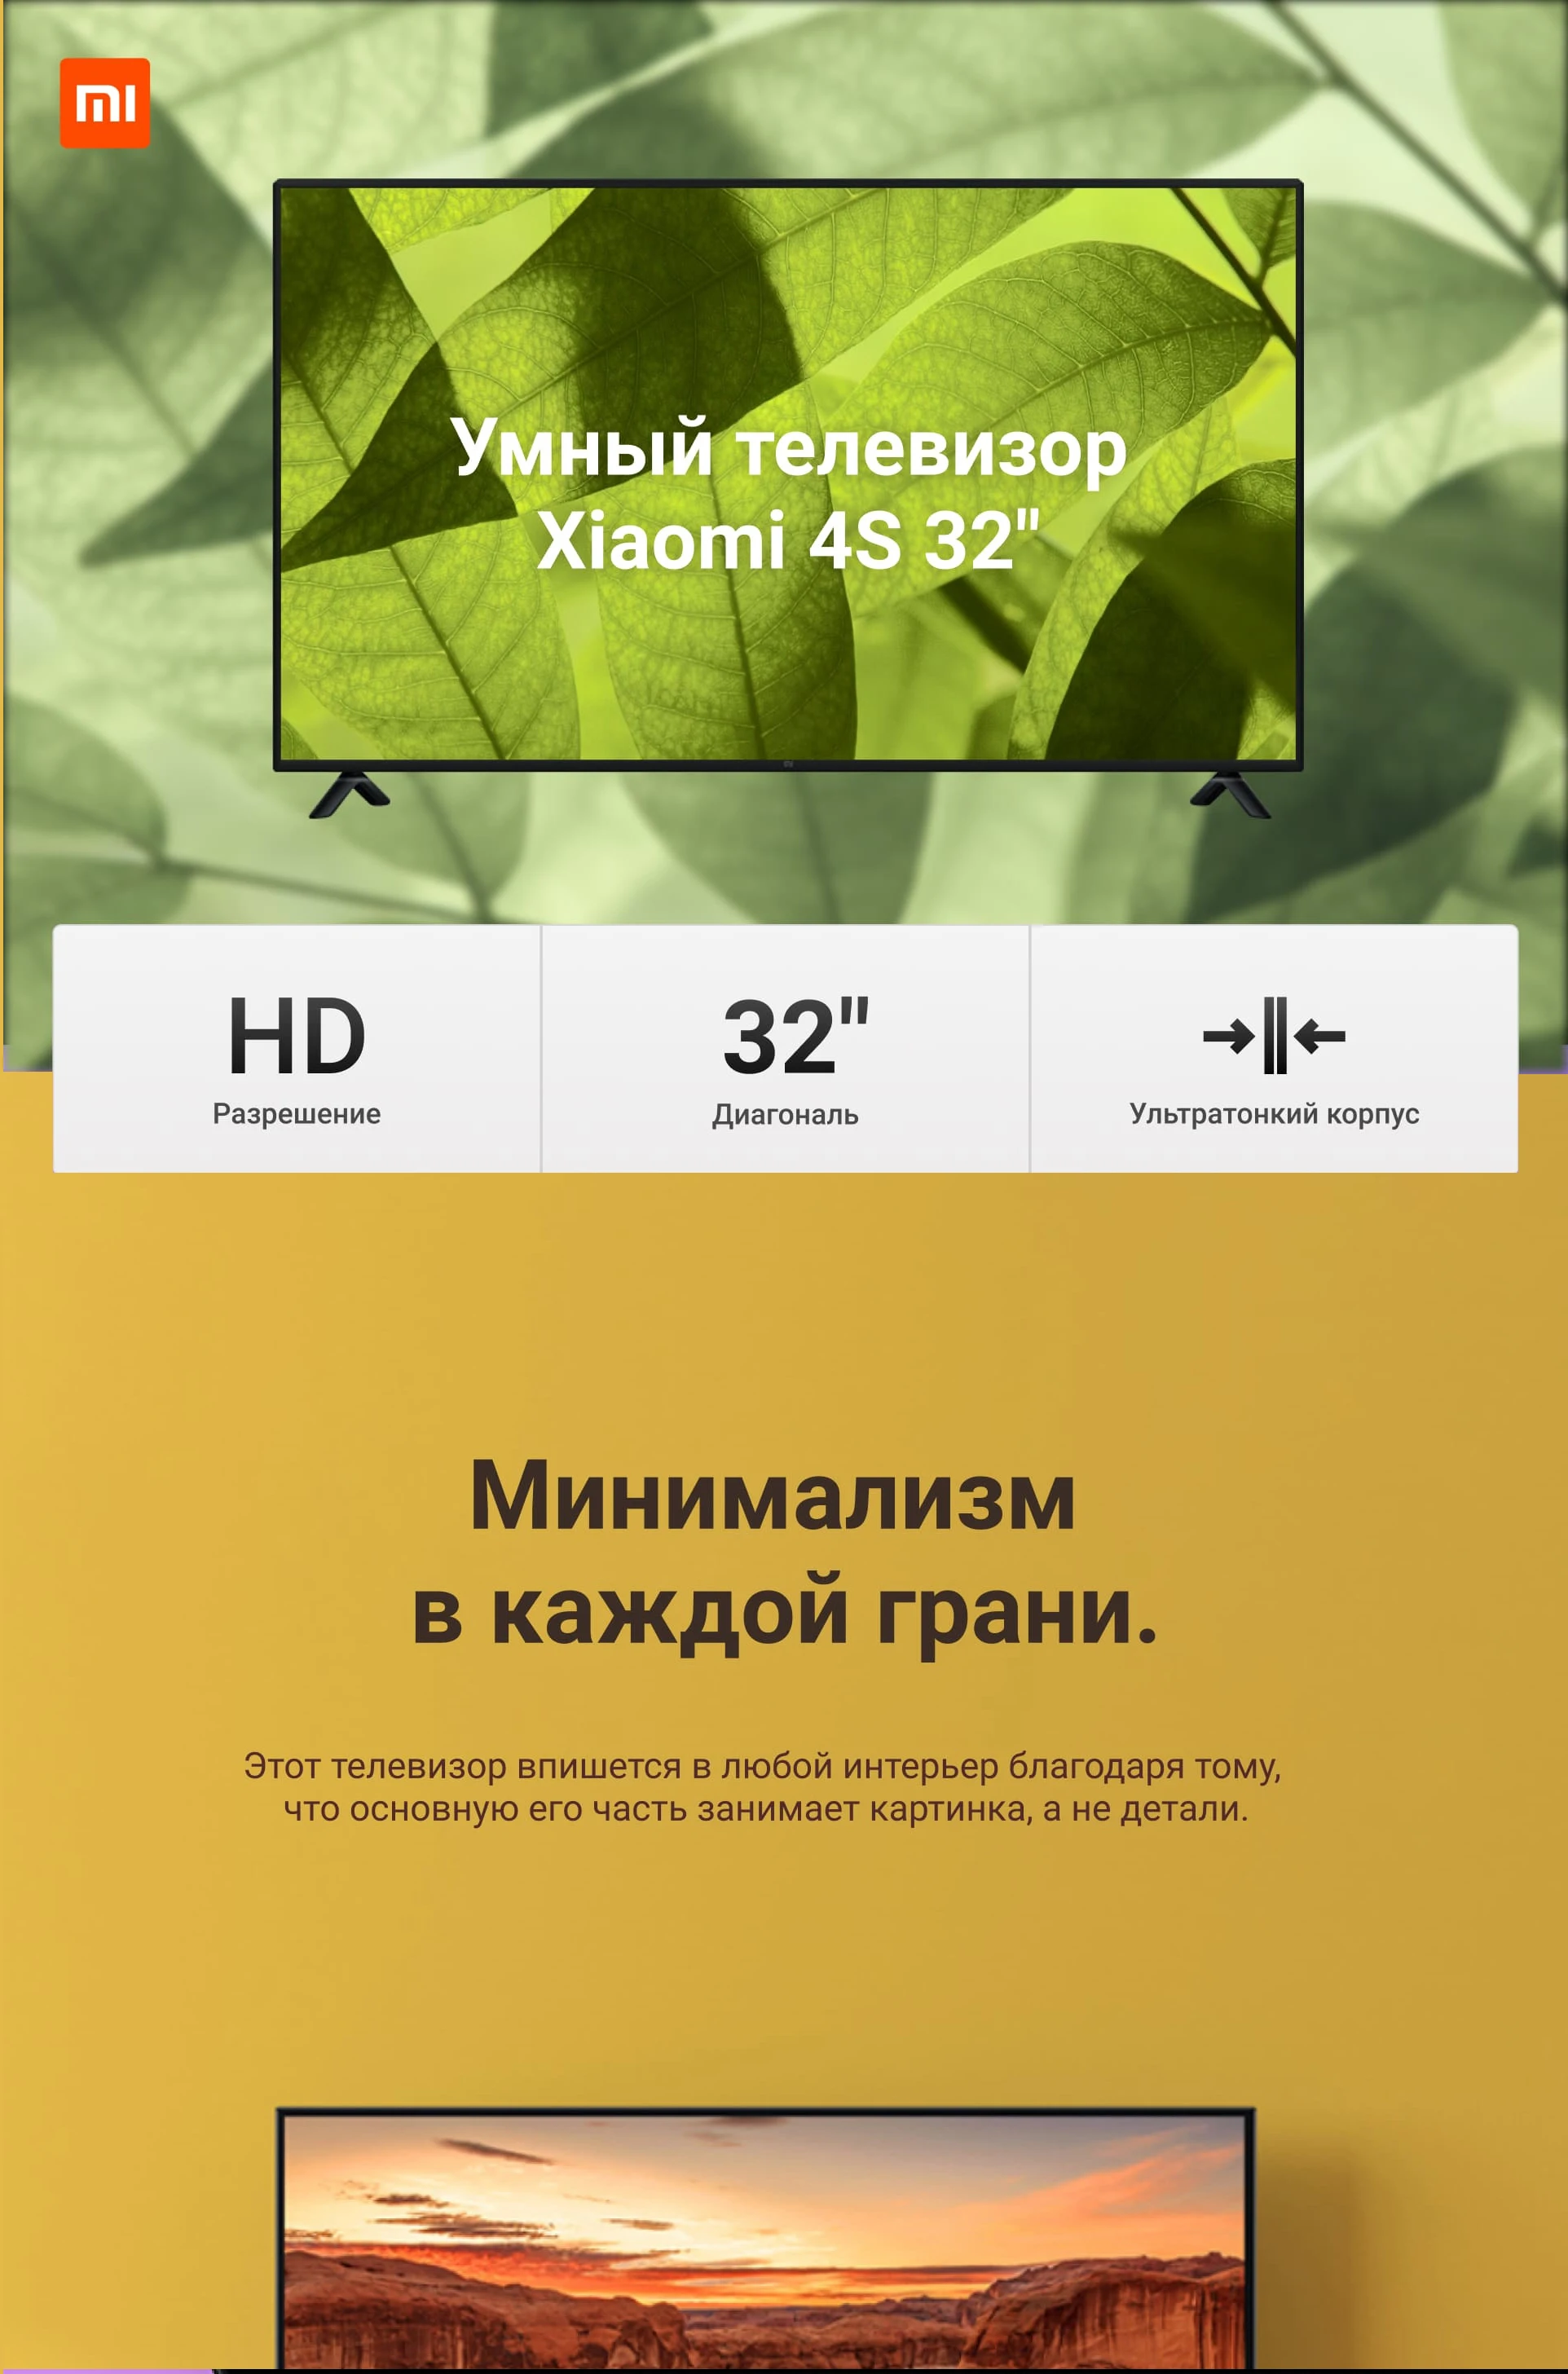 Телевизор Xiaomi mi ТВ Android светодиодная подсветка Смарт ТВ 4S 32 дюйма | Custo mi zed русский язык | подарок настенный кронштейн